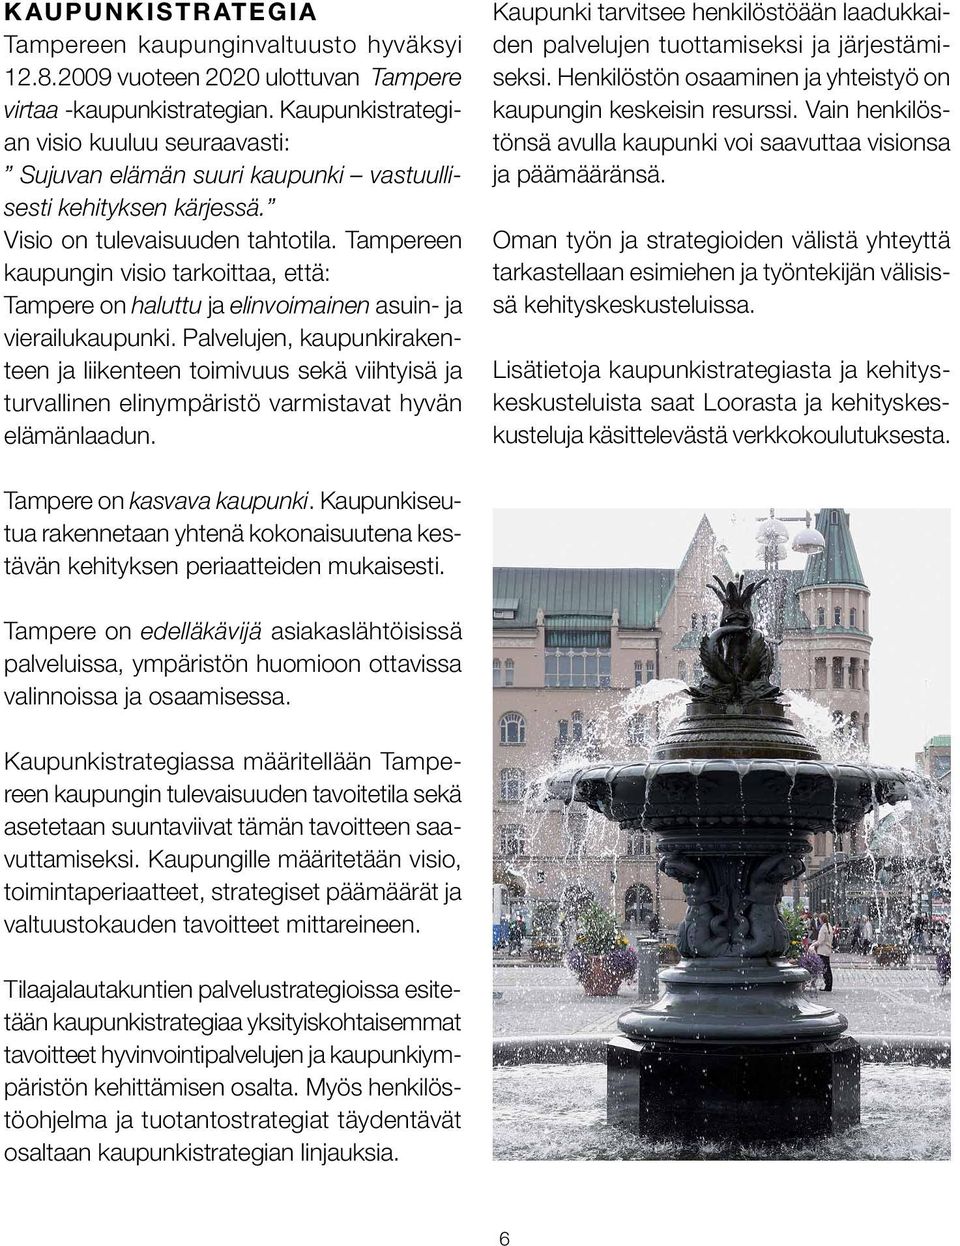 Tampereen kaupungin visio tarkoittaa, että: Tampere on haluttu ja elinvoimainen asuin- ja vierailukaupunki.